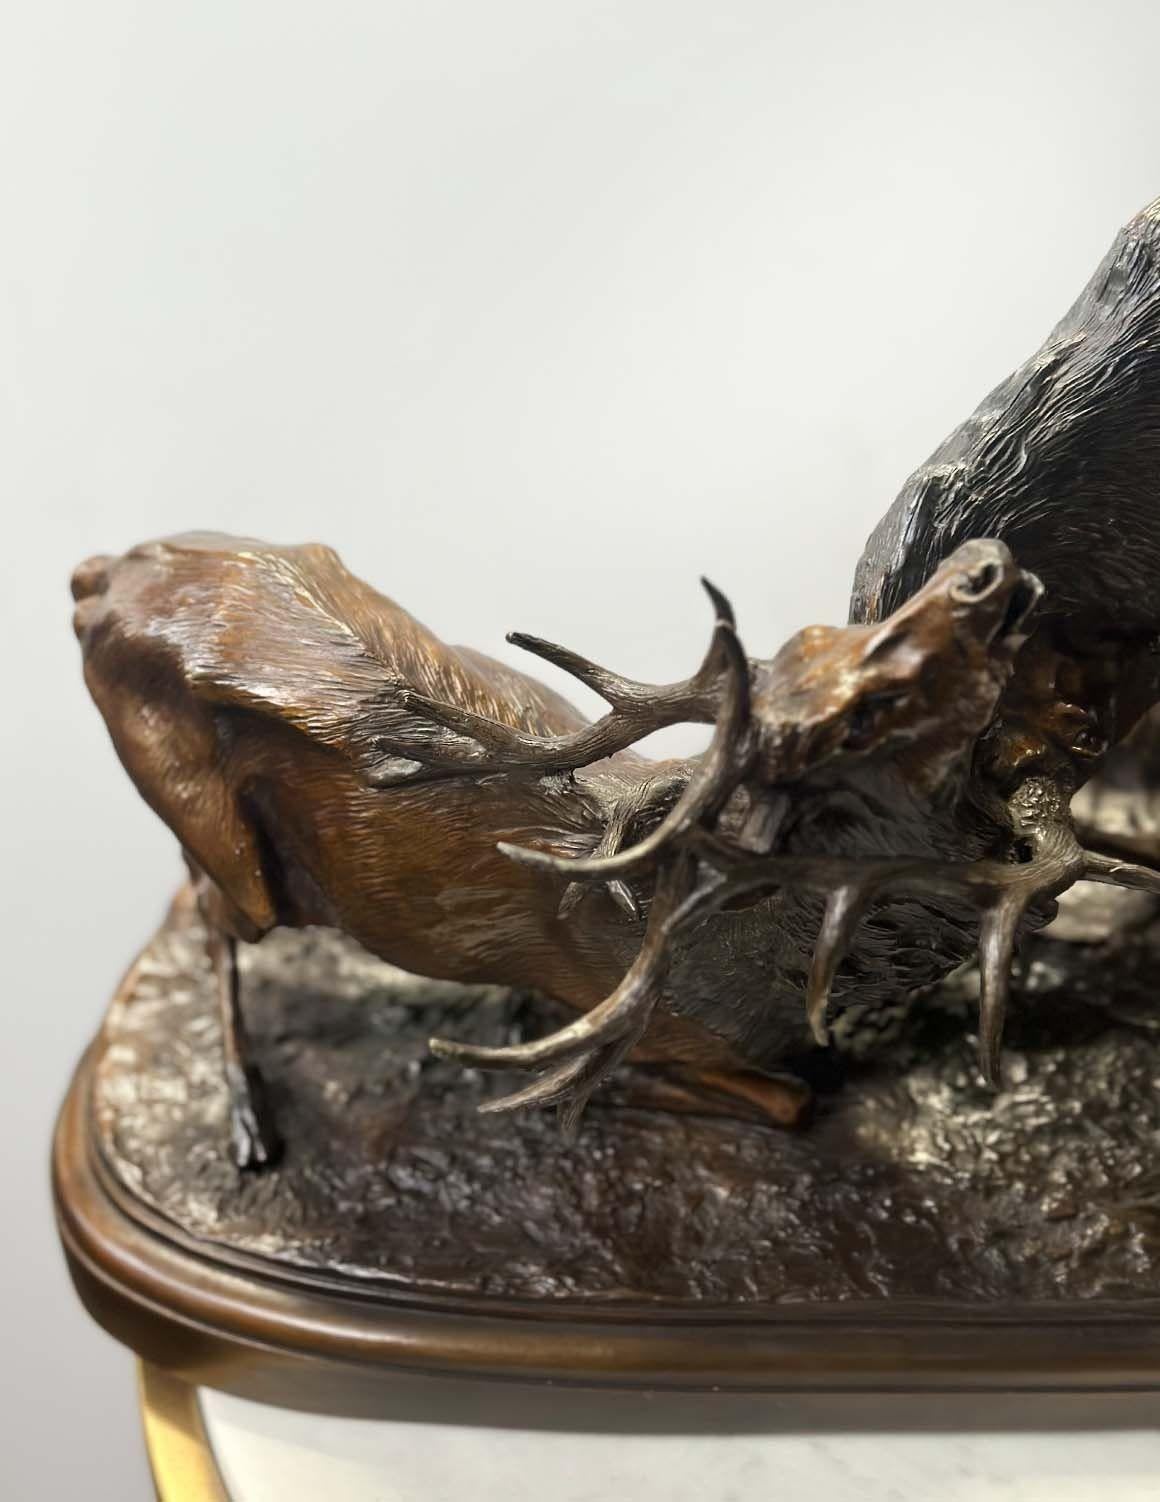 Die Bronzeskulptur von Pierre-Jules Mêne (Franzose, 1810-1879) aus dem späten 19. Jahrhundert fängt einen fesselnden Moment in der Natur ein, indem sie zwei majestätische Elche in einem heftigen und dynamischen Kampf darstellt.
Die Bronze ist mit